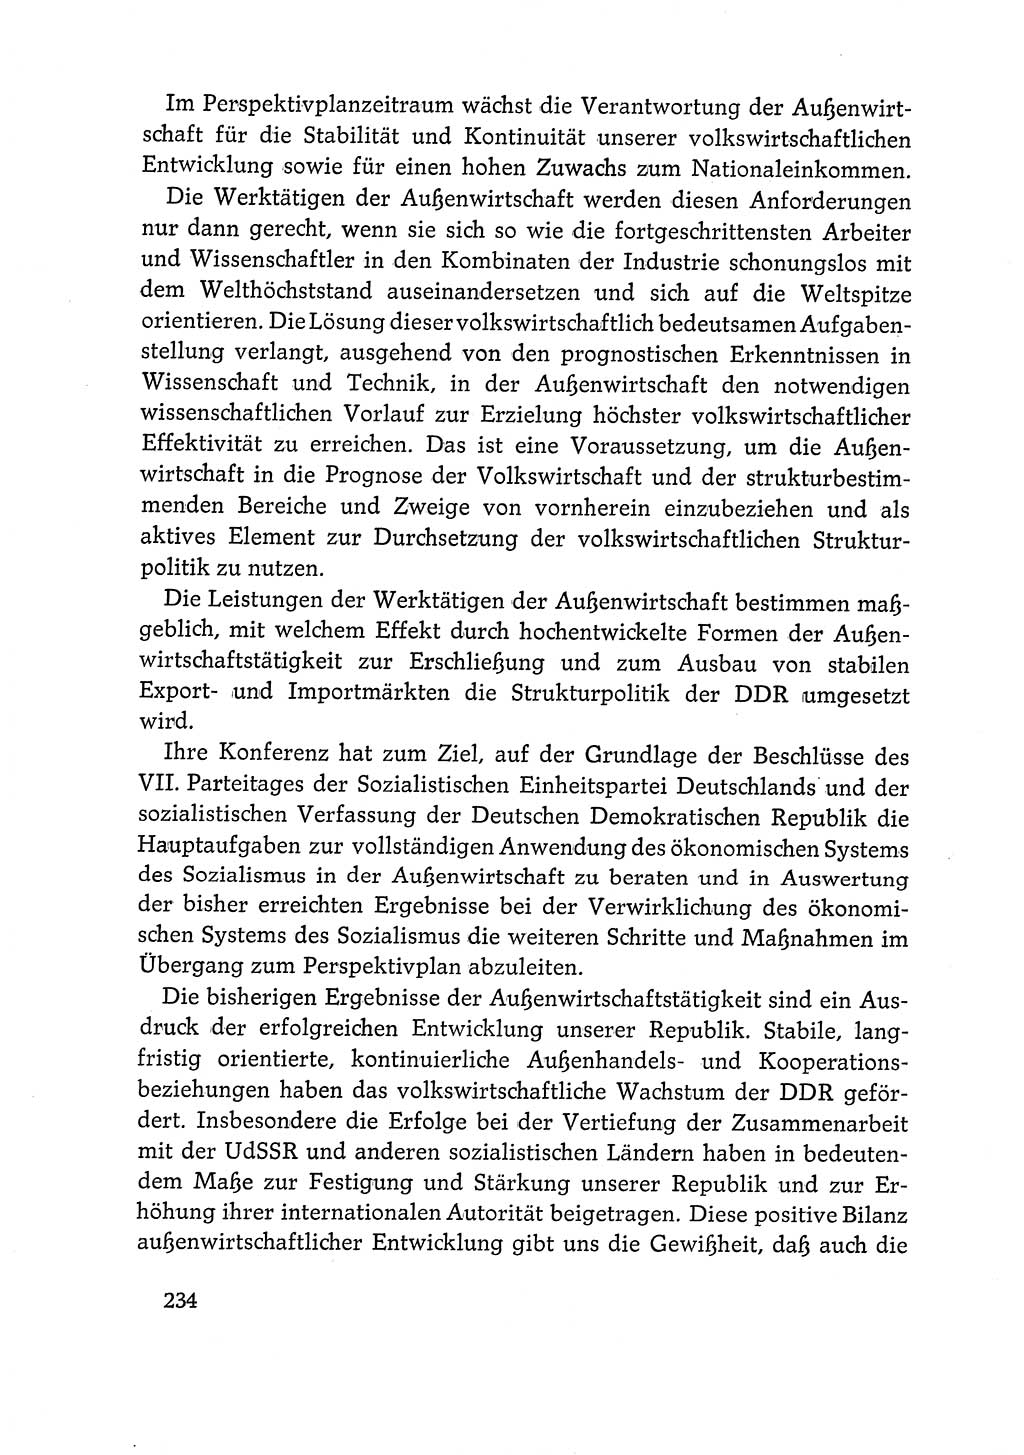 Dokumente der Sozialistischen Einheitspartei Deutschlands (SED) [Deutsche Demokratische Republik (DDR)] 1968-1969, Seite 234 (Dok. SED DDR 1968-1969, S. 234)